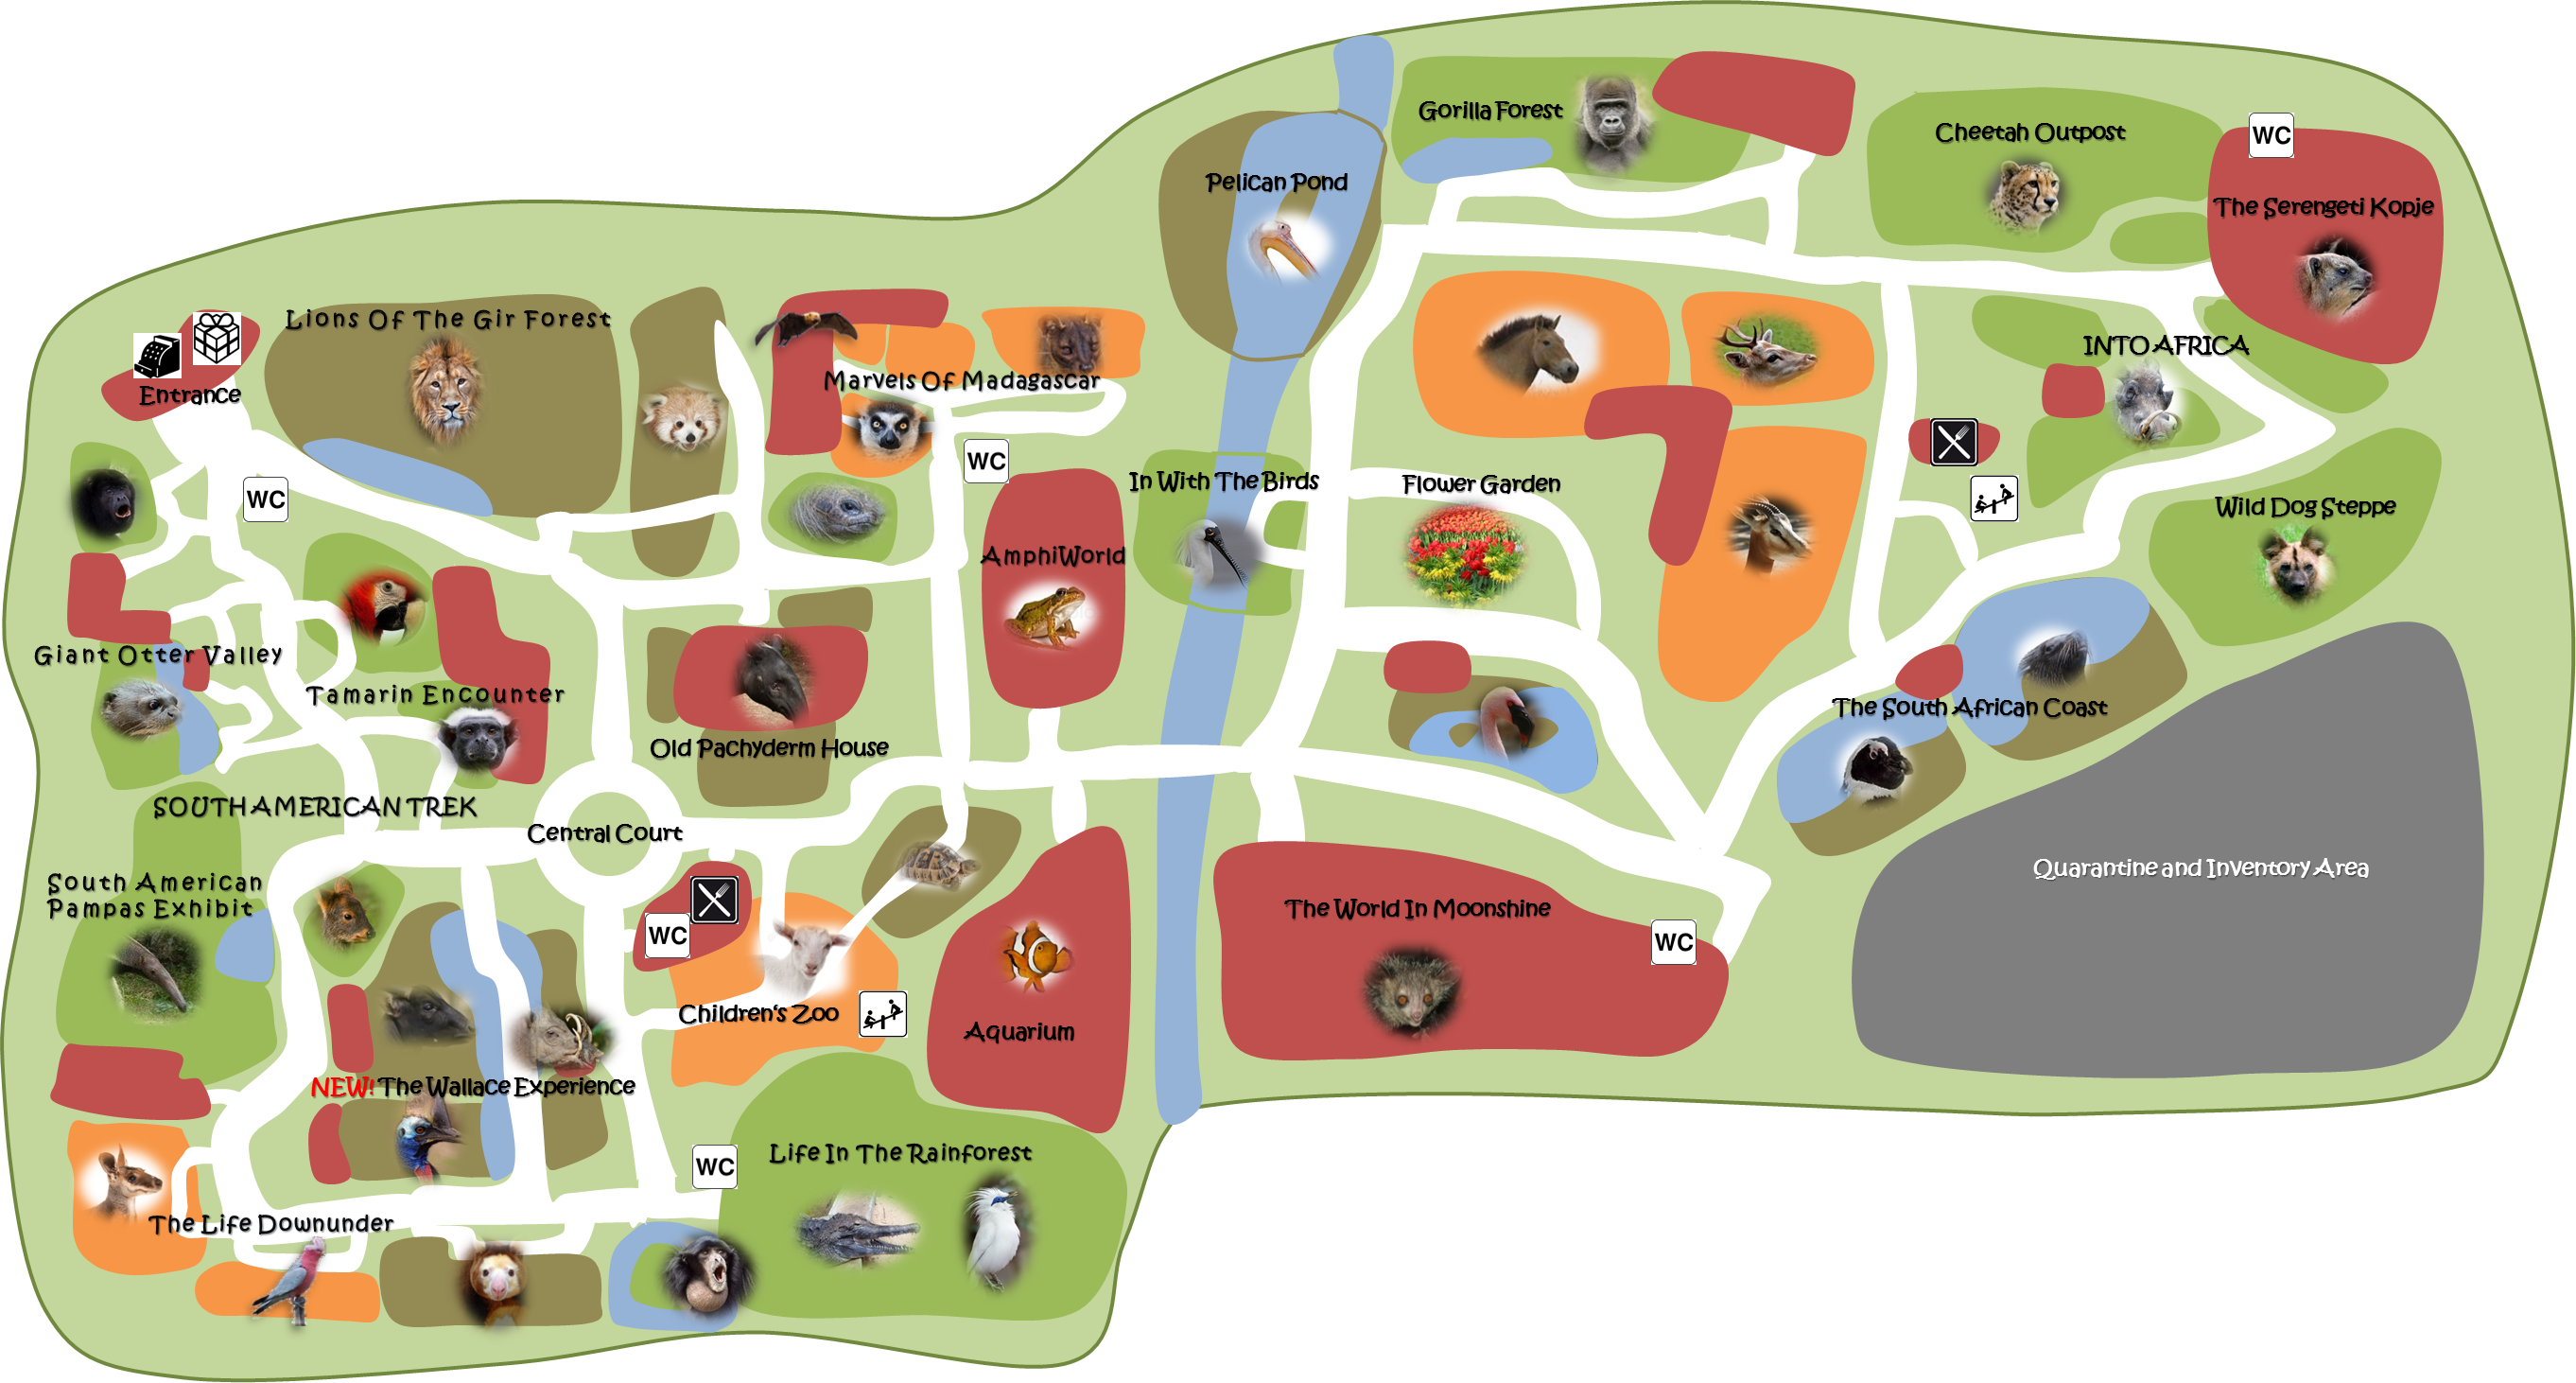 План зоопарка. Карта зоопарка. Карта морского зоопарка. Зоопарк план парка. Отделы зоопарка